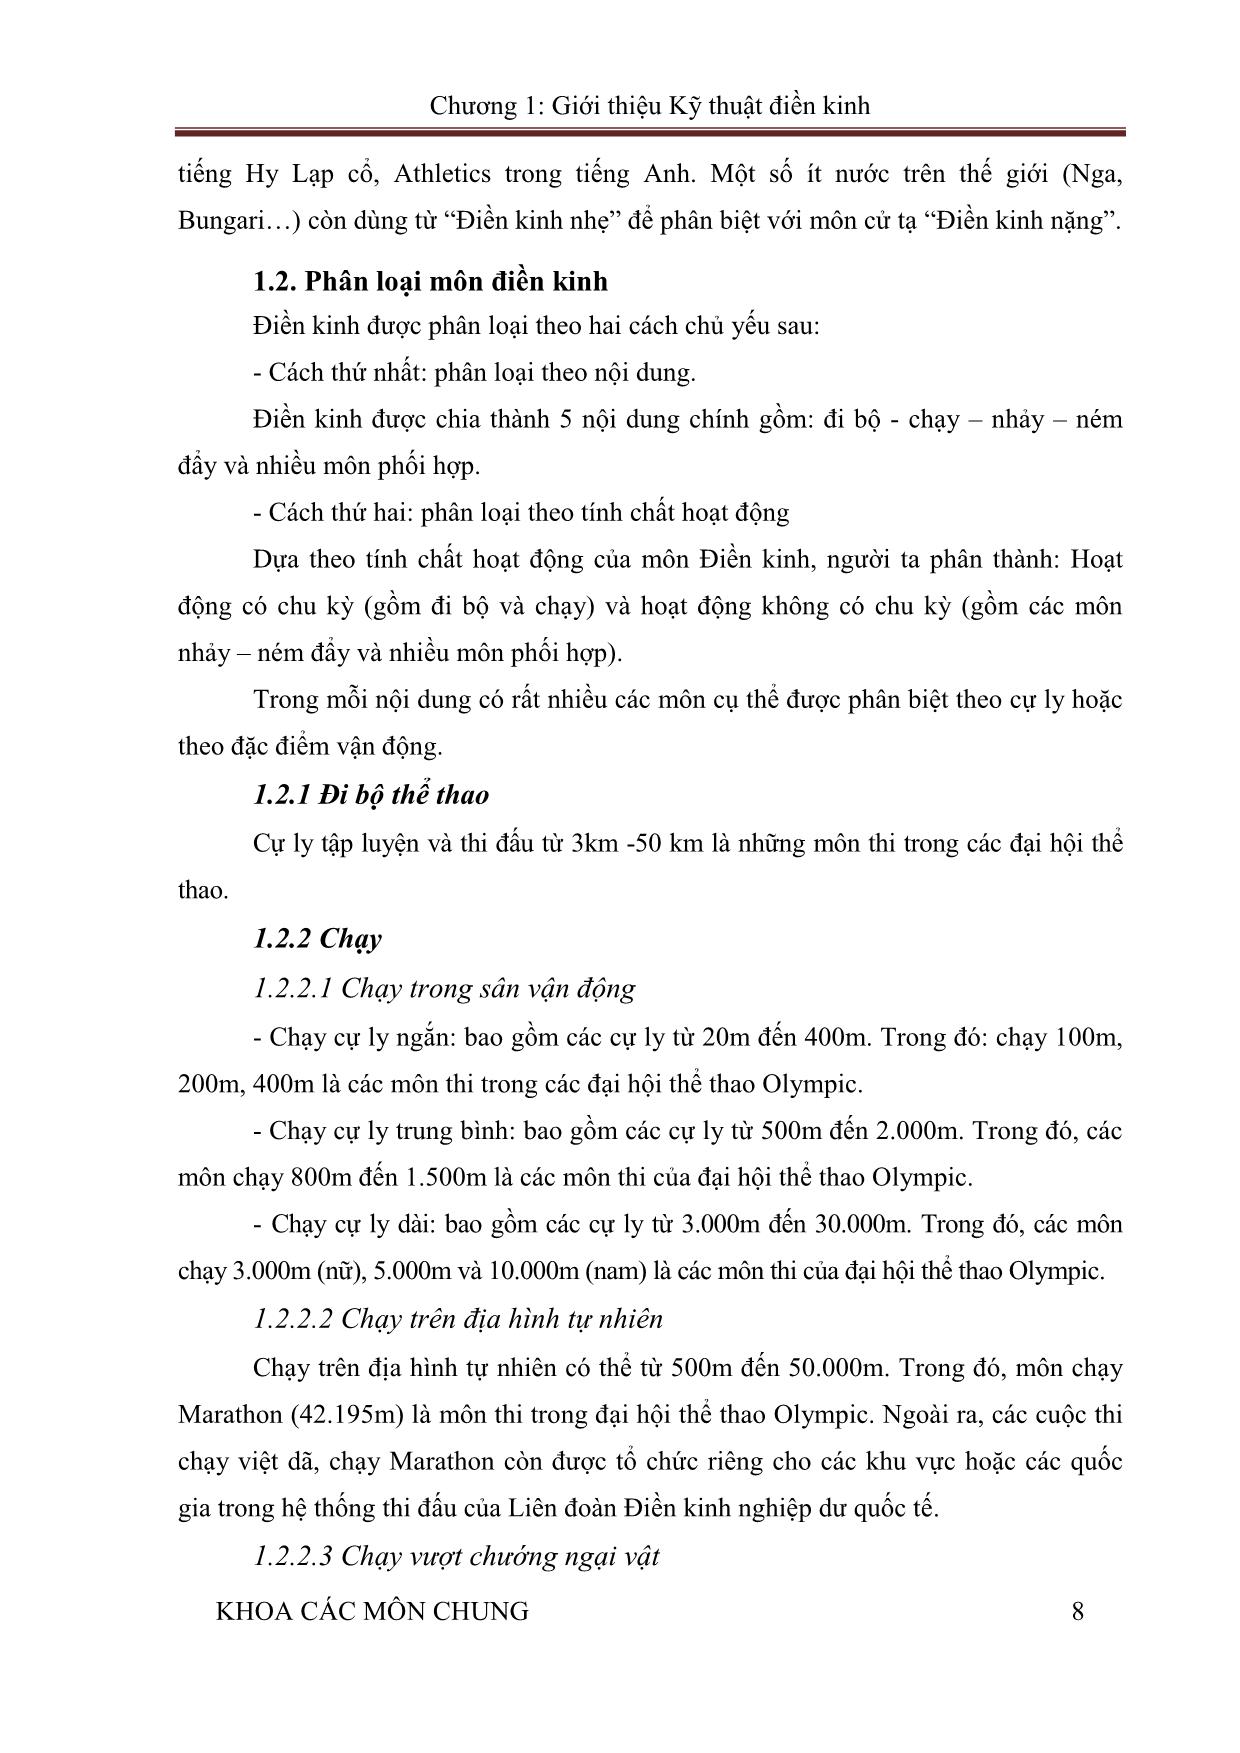 Giáo trình Điền kinh trang 8